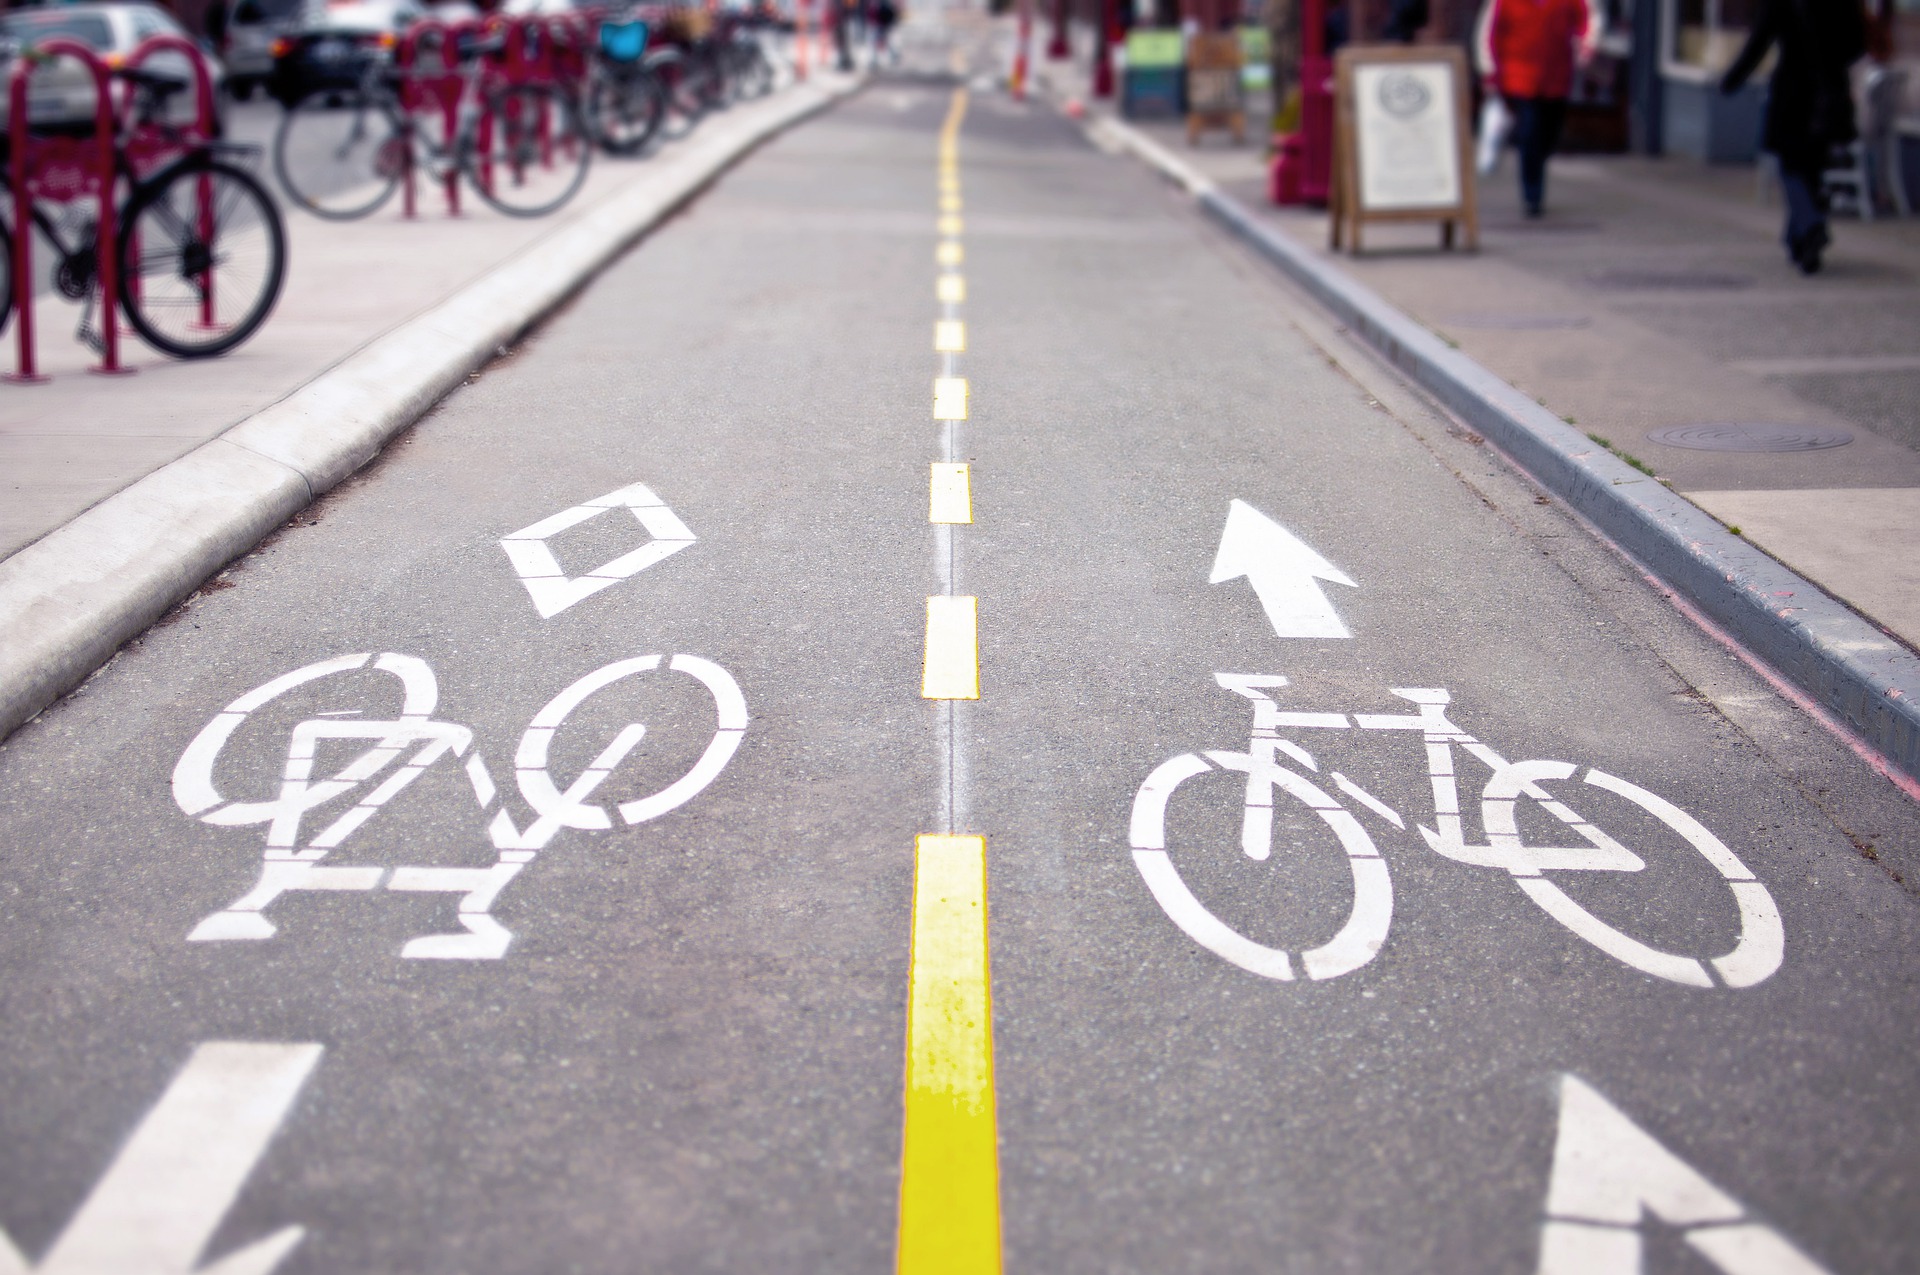 ¿Qué hace que un carril bici sea atractivo para l@s ciclistas?